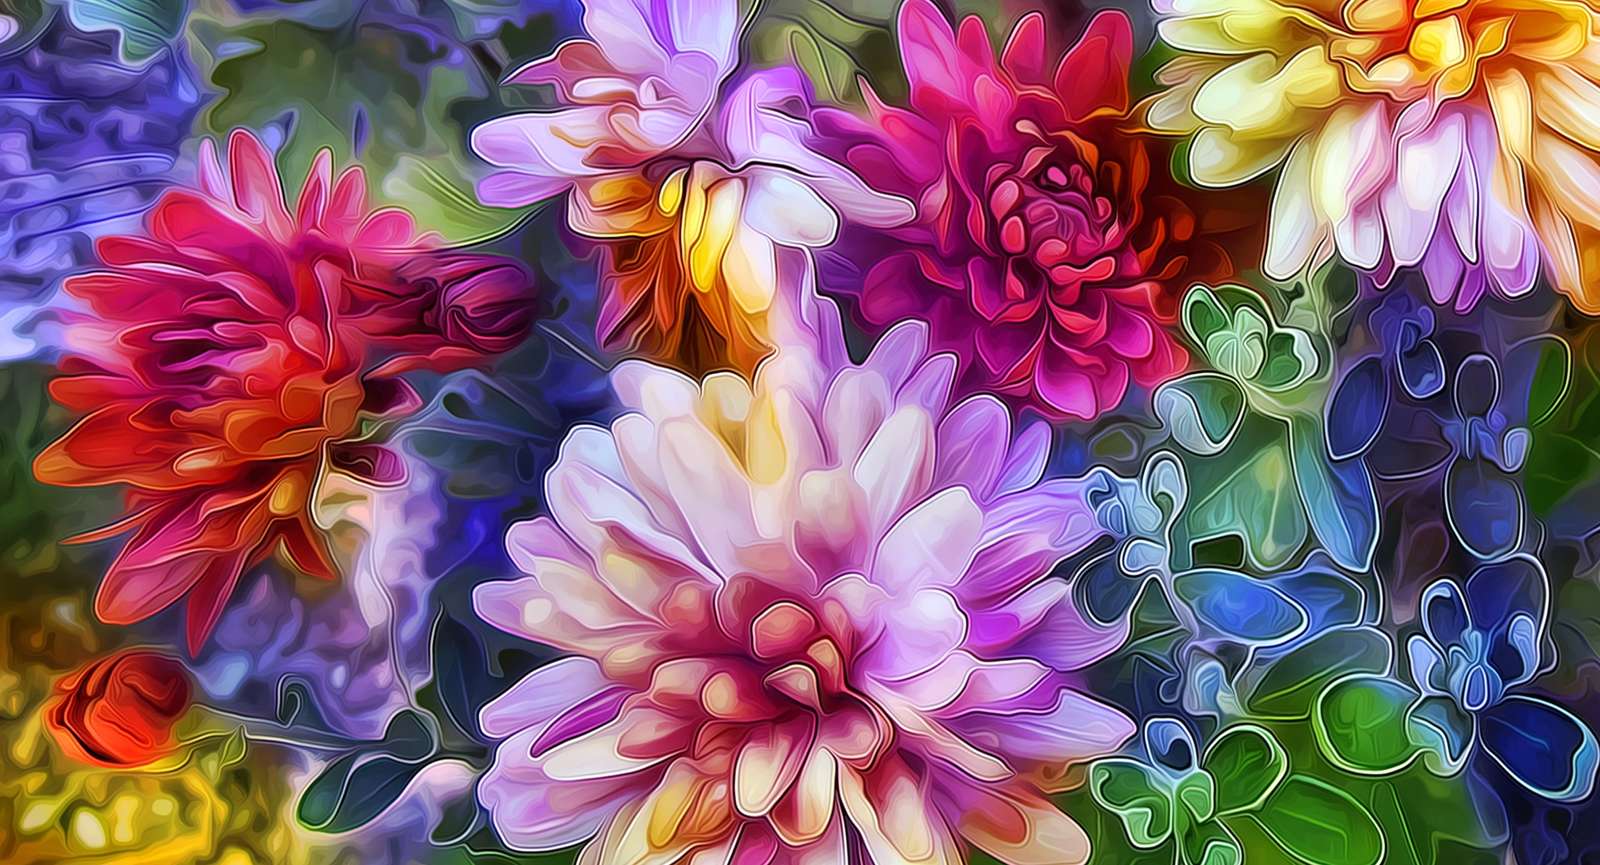 floral composition online puzzle